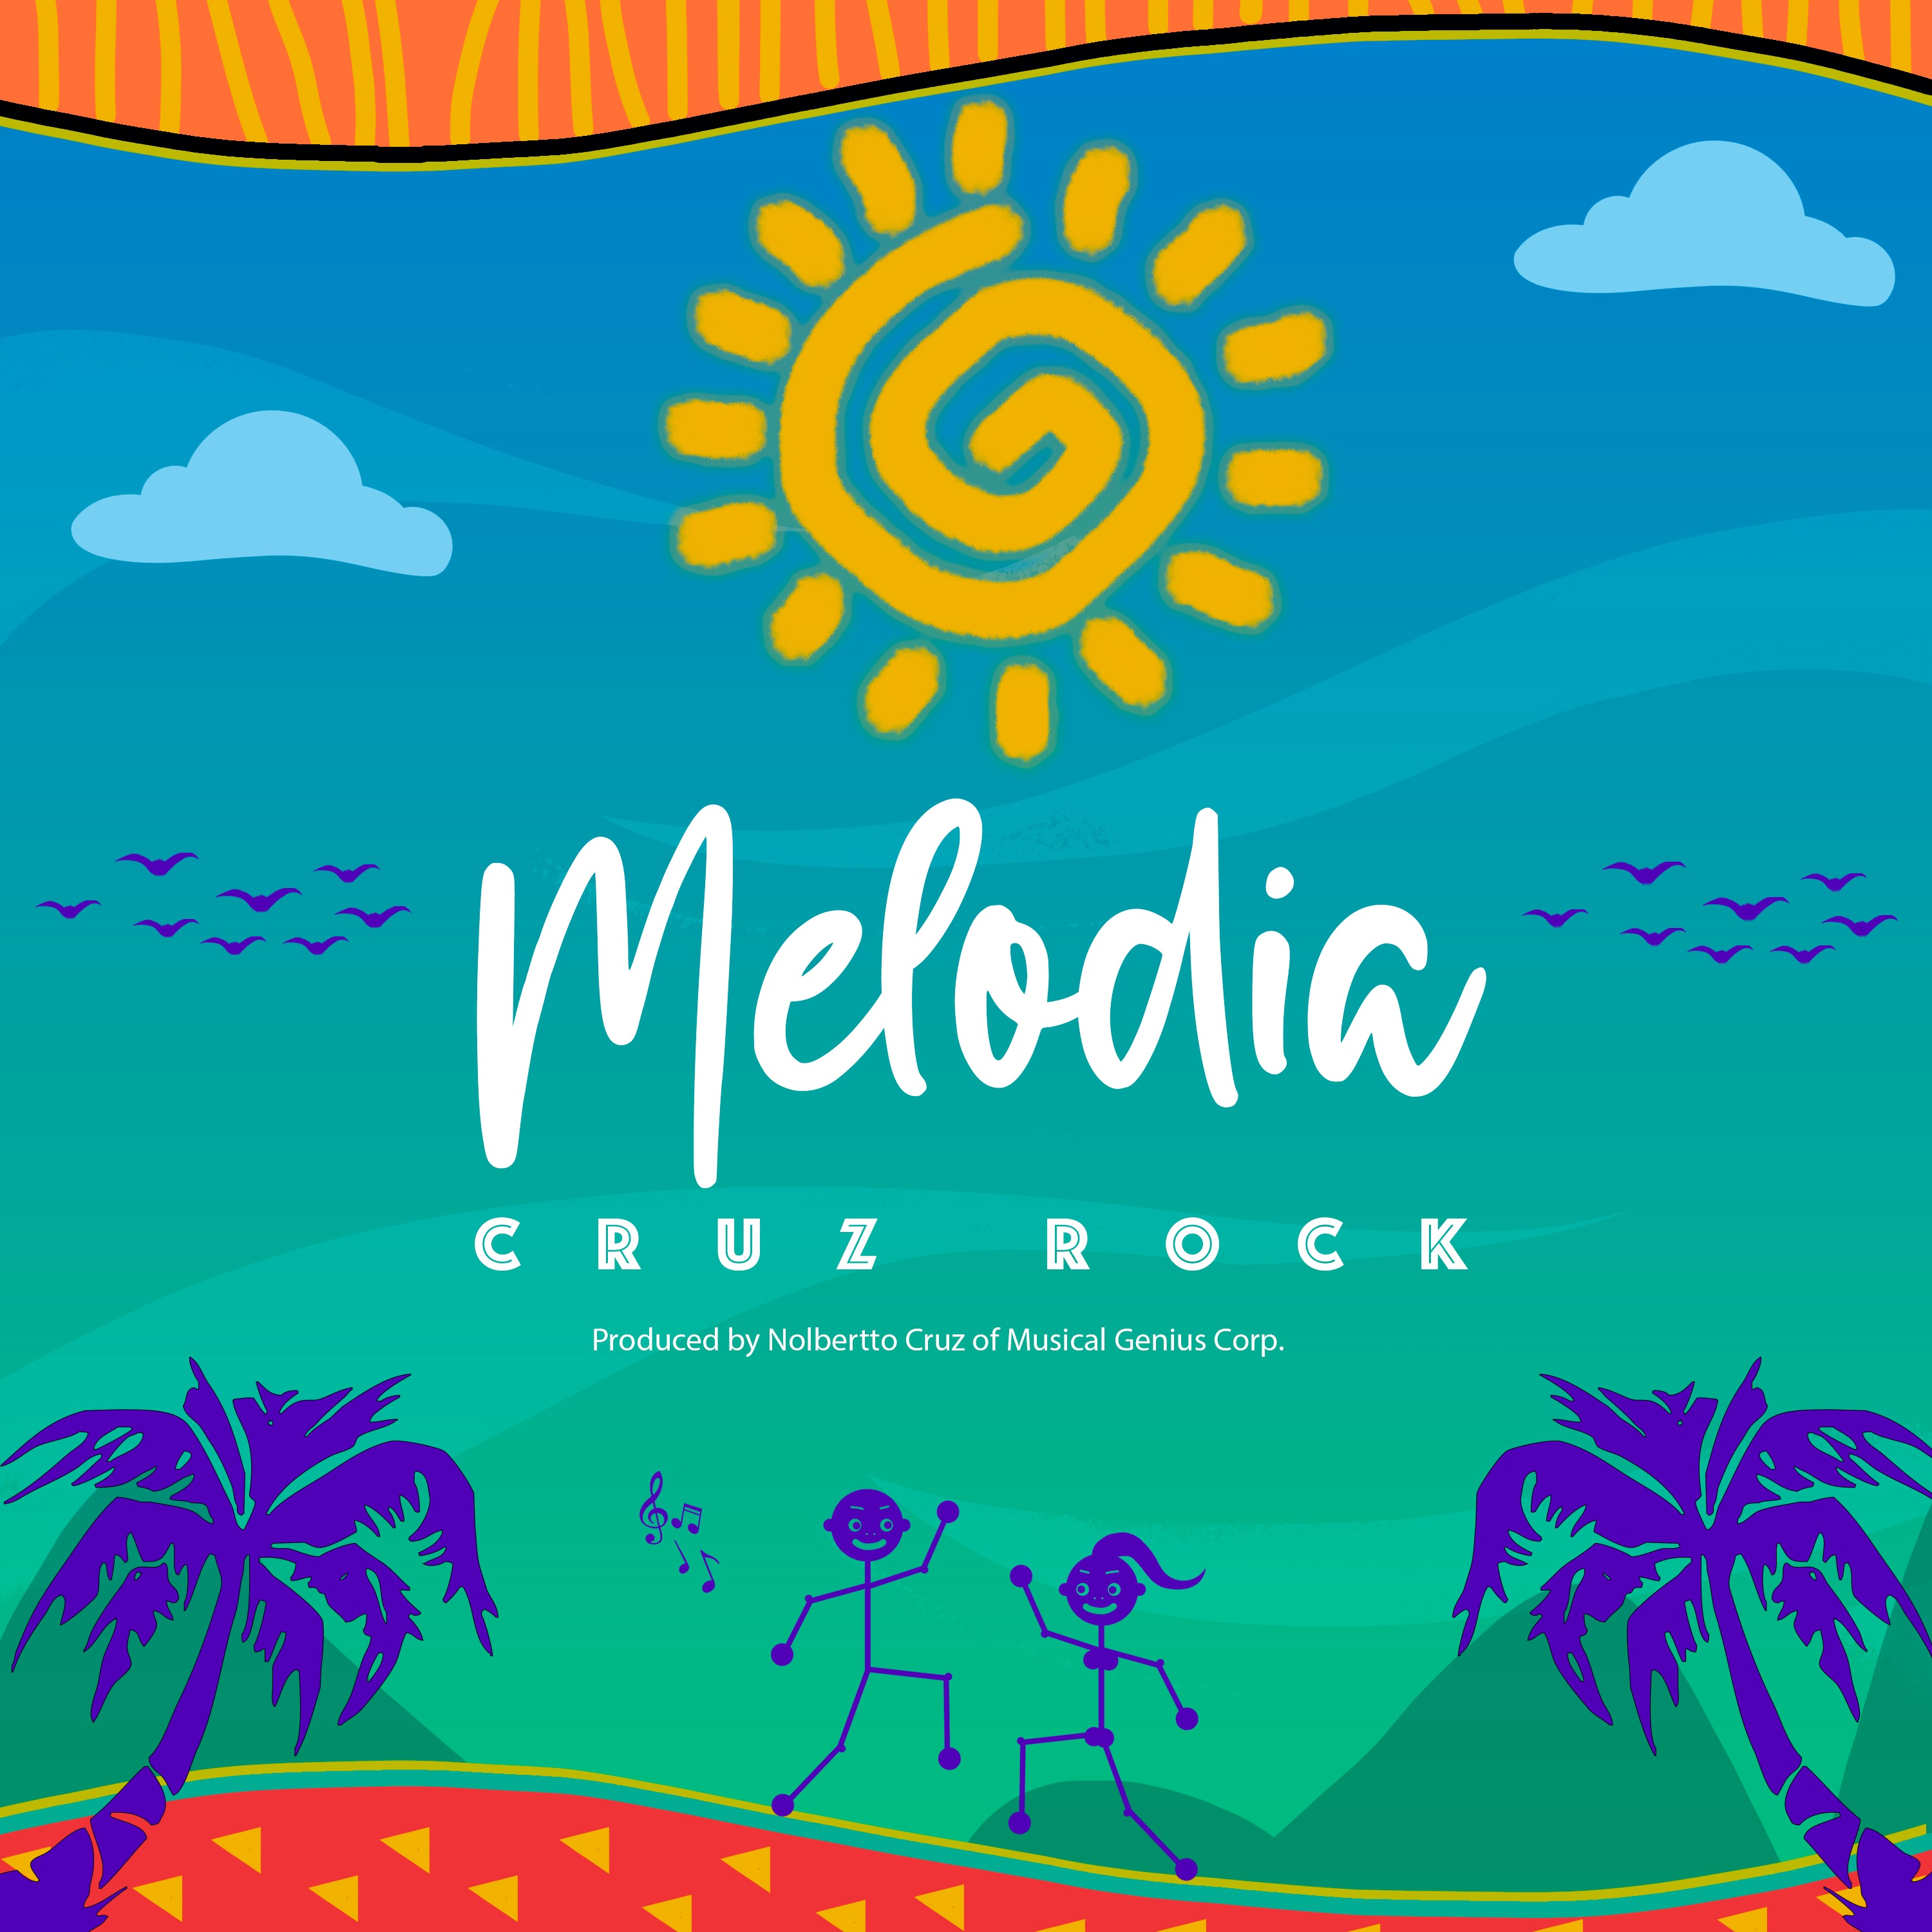 ਡਾਉਨਲੋਡ ਕਰੋ Melodia by Cruz Rock